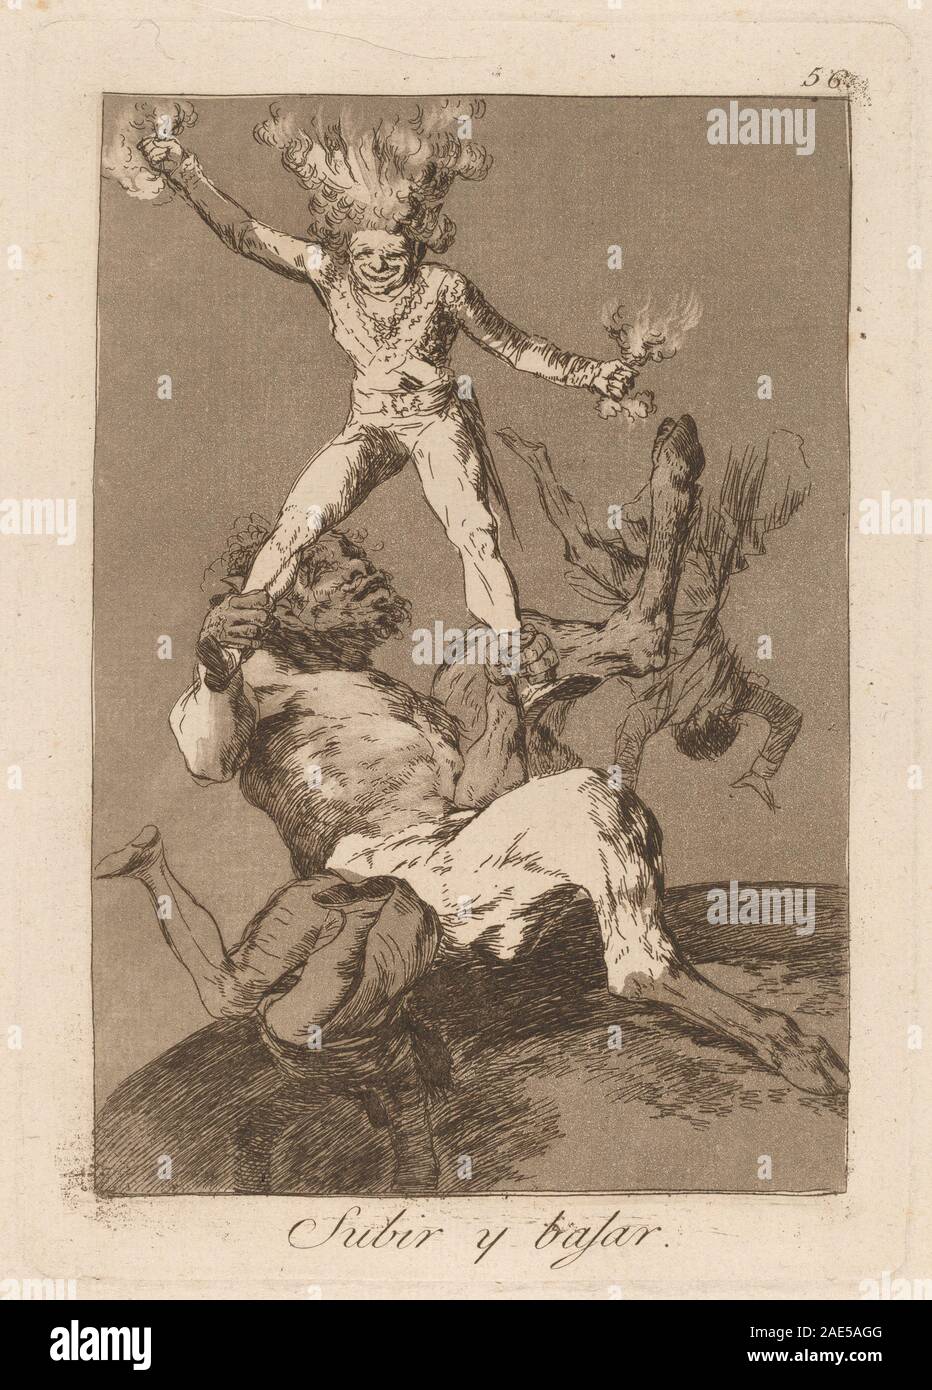 Los caprichos: Subir y bajar; published 1799 Francisco de Goya, Los caprichos - Subir y bajar, published 1799 Stock Photo